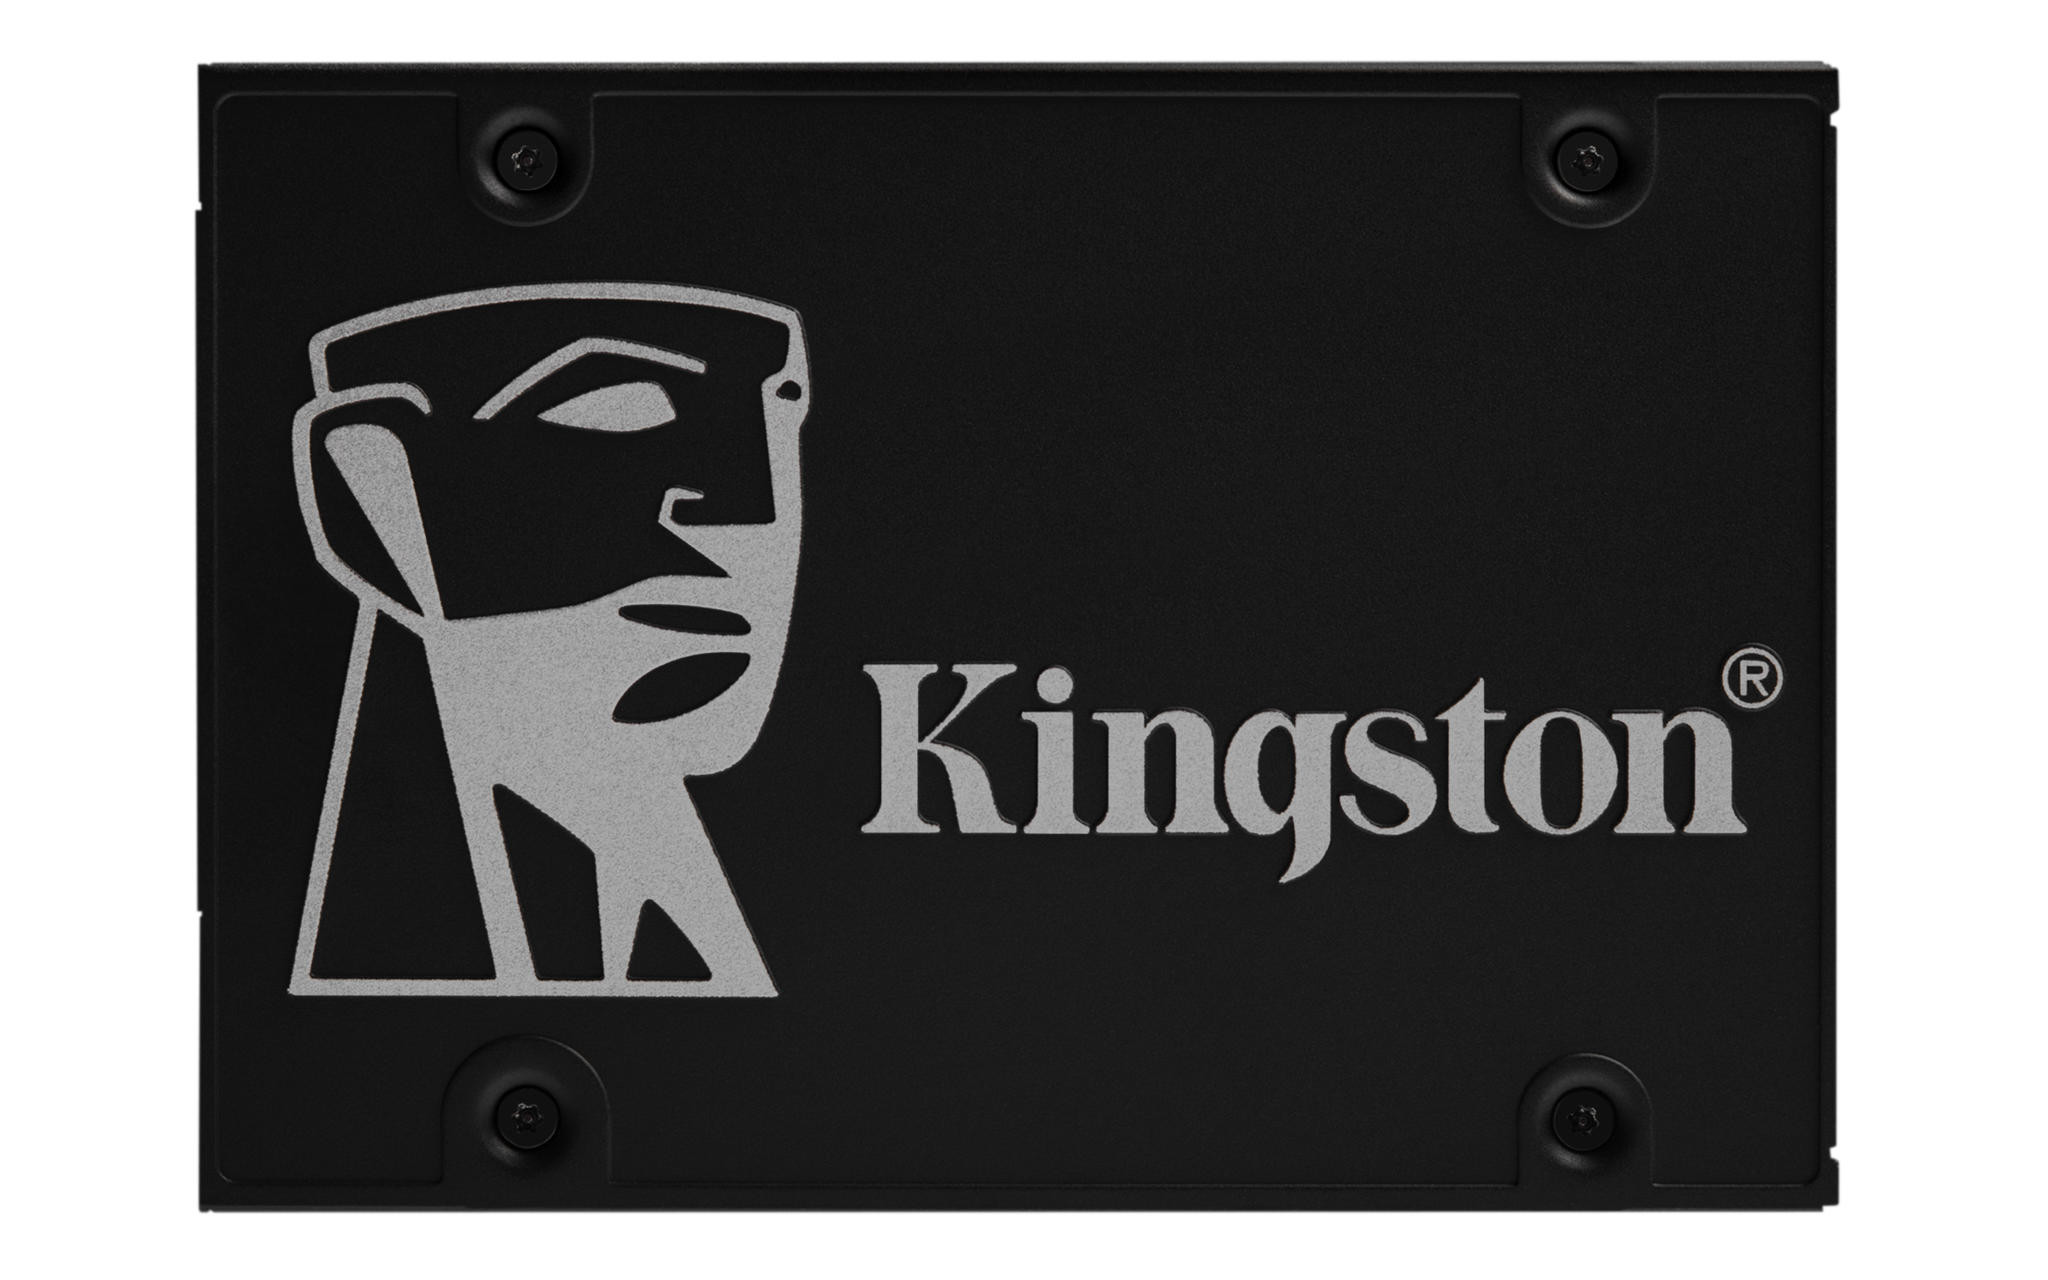 Kingston KC310 SSD 512GB upgrade kit